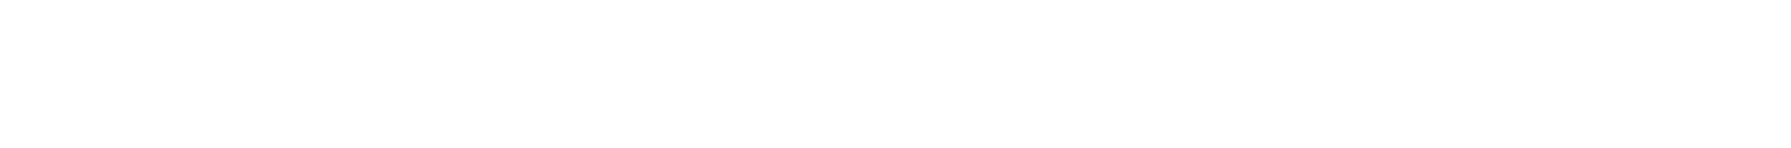 Marsh & McLennan Companies logo grand pour les fonds sombres (PNG transparent)